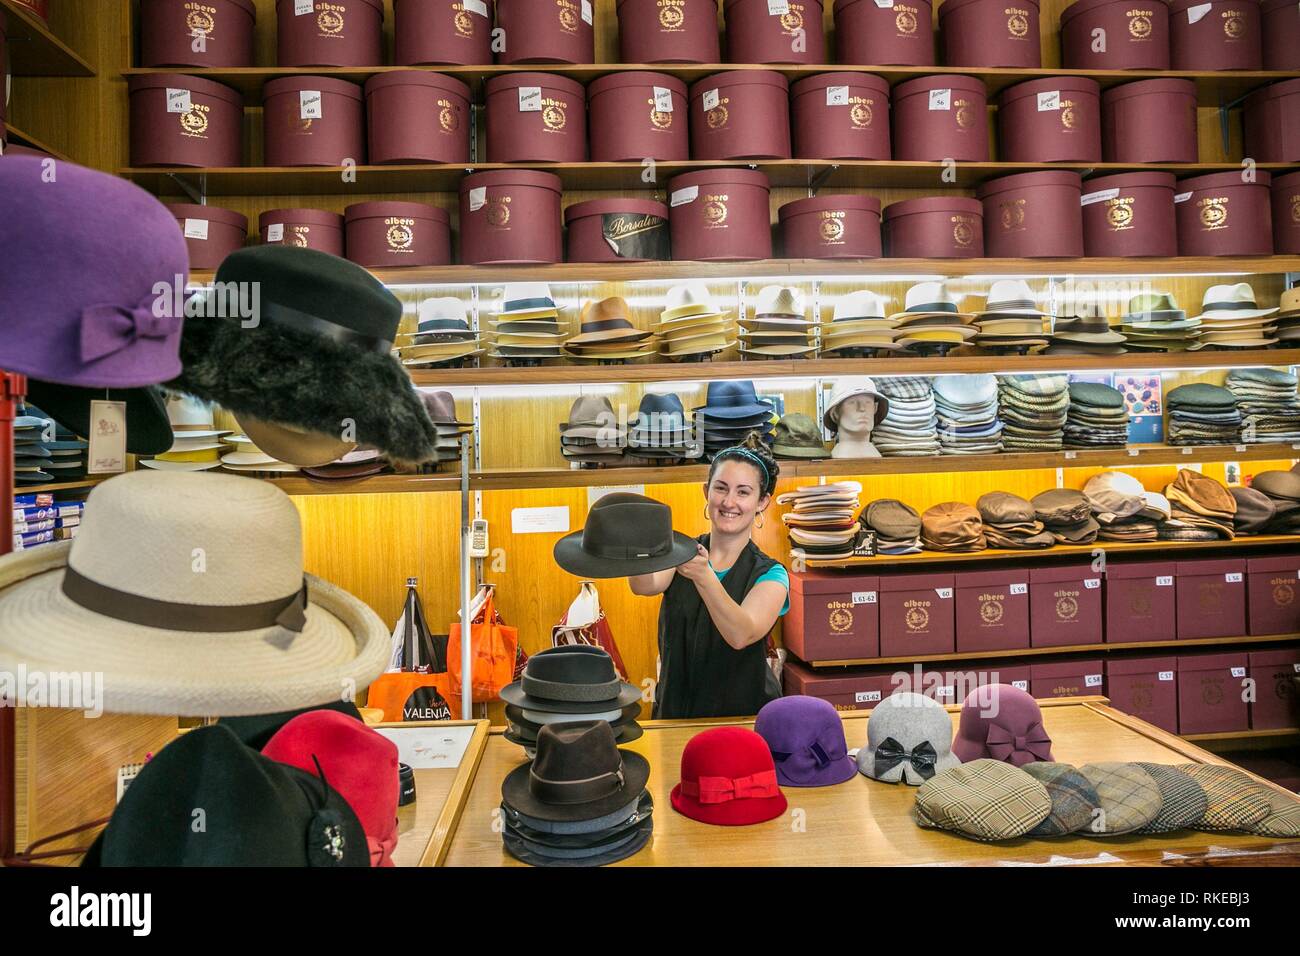 Sombreros Albero, magasin de chapeaux. Valence. Communauté de Valence.  L'Espagne Photo Stock - Alamy